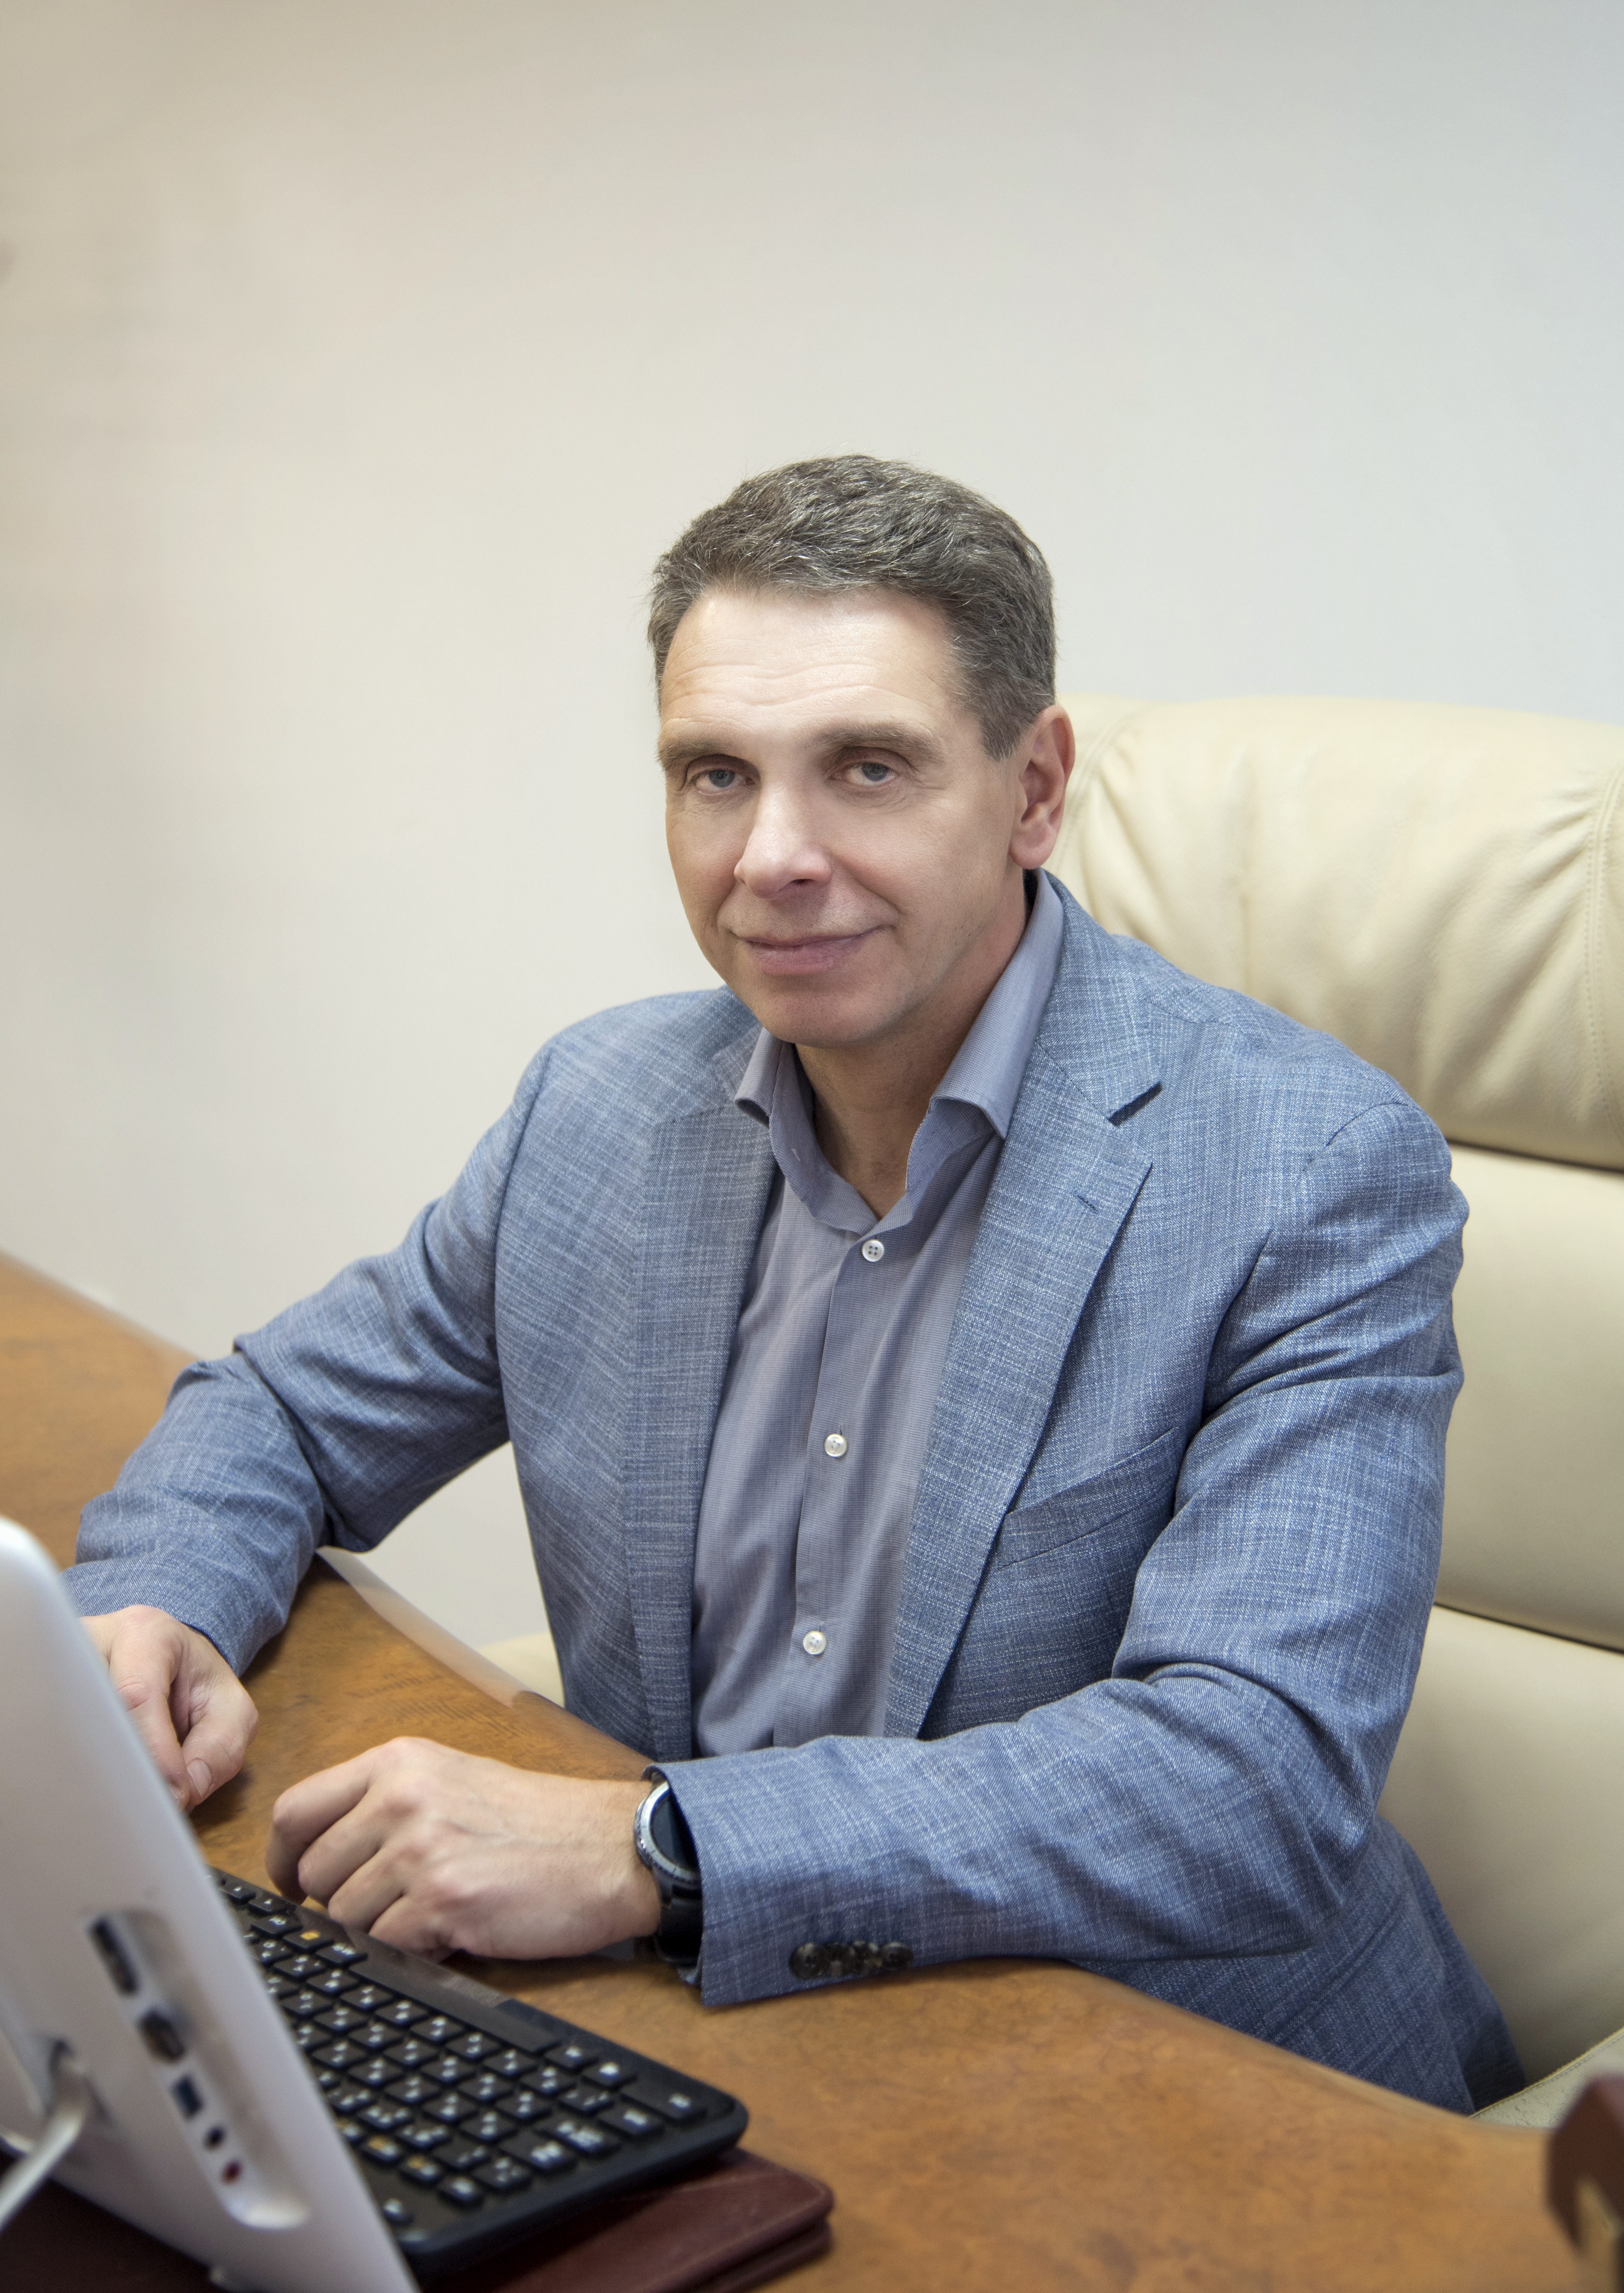 Валерій Семенович Маковецький – бізнесмен, учасник списку Forbes Україна